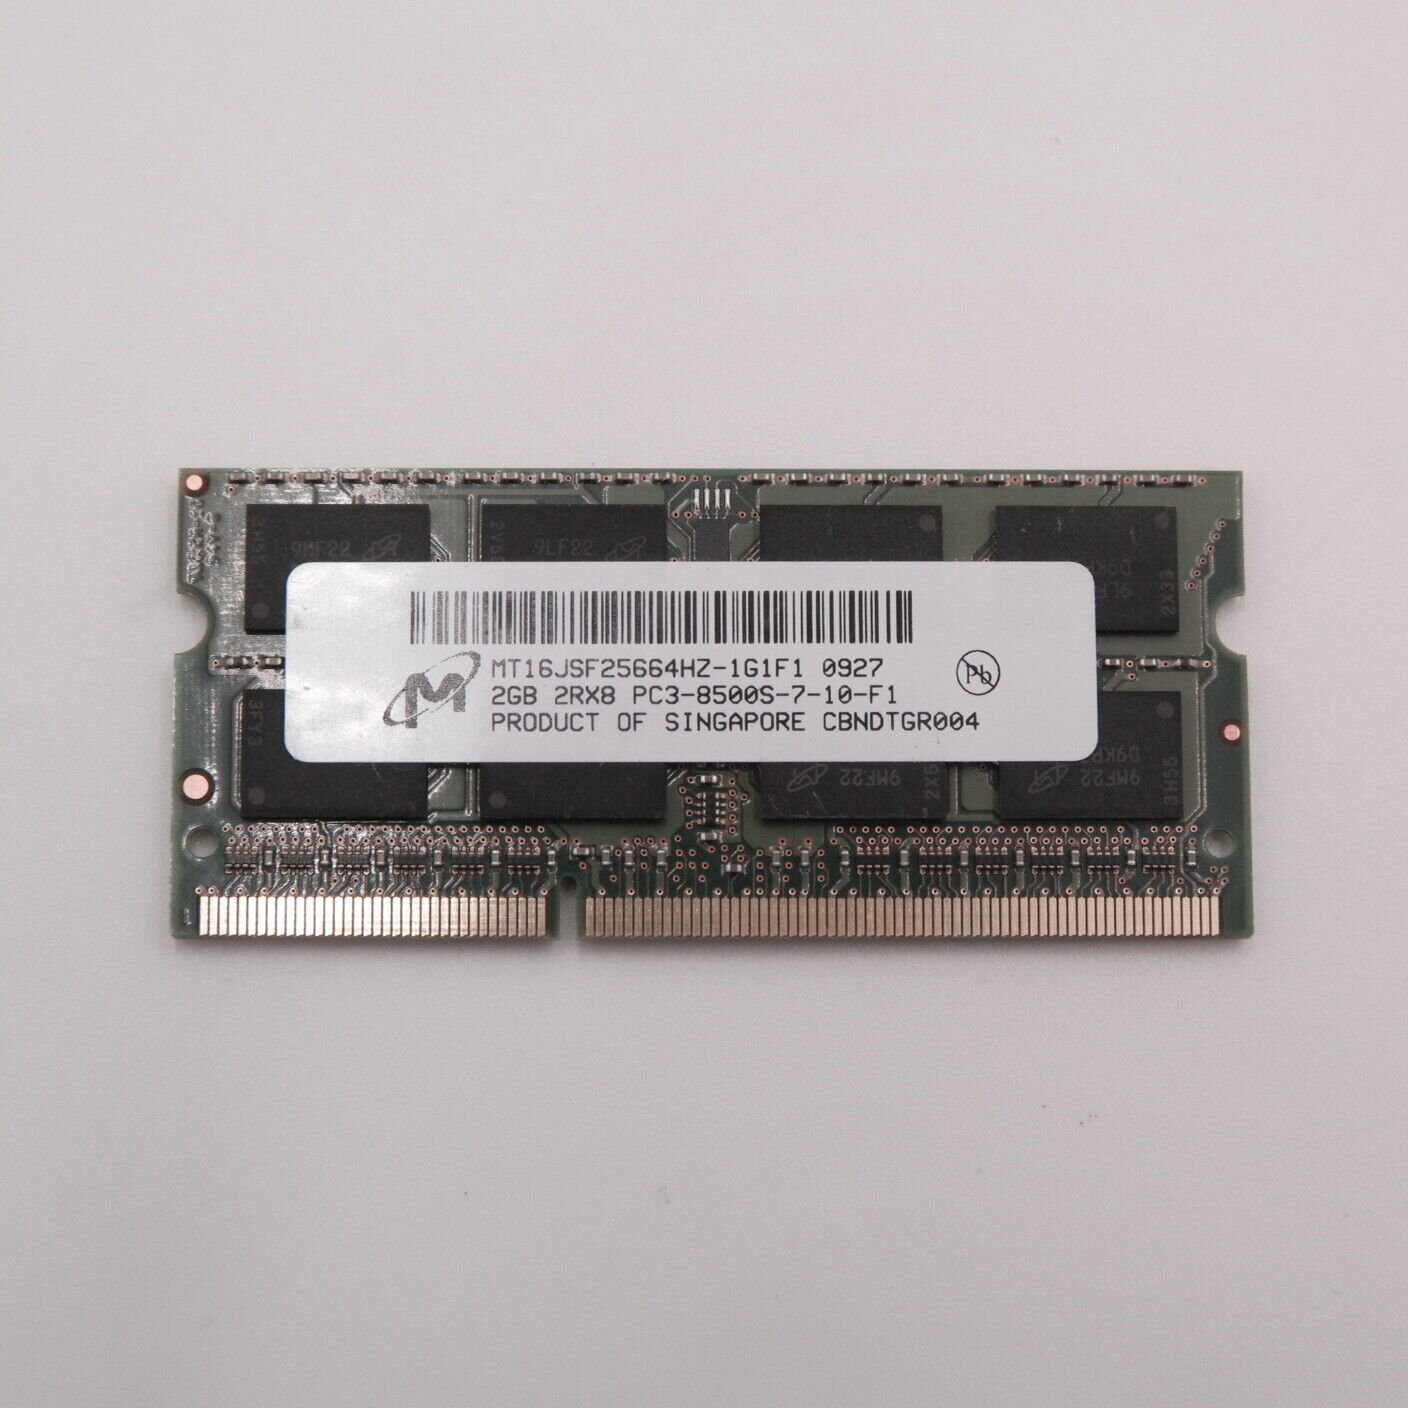 Micron 2GB DDR3 Laptop Memory 2RX8 PC3-8500S 1066MHz (B)